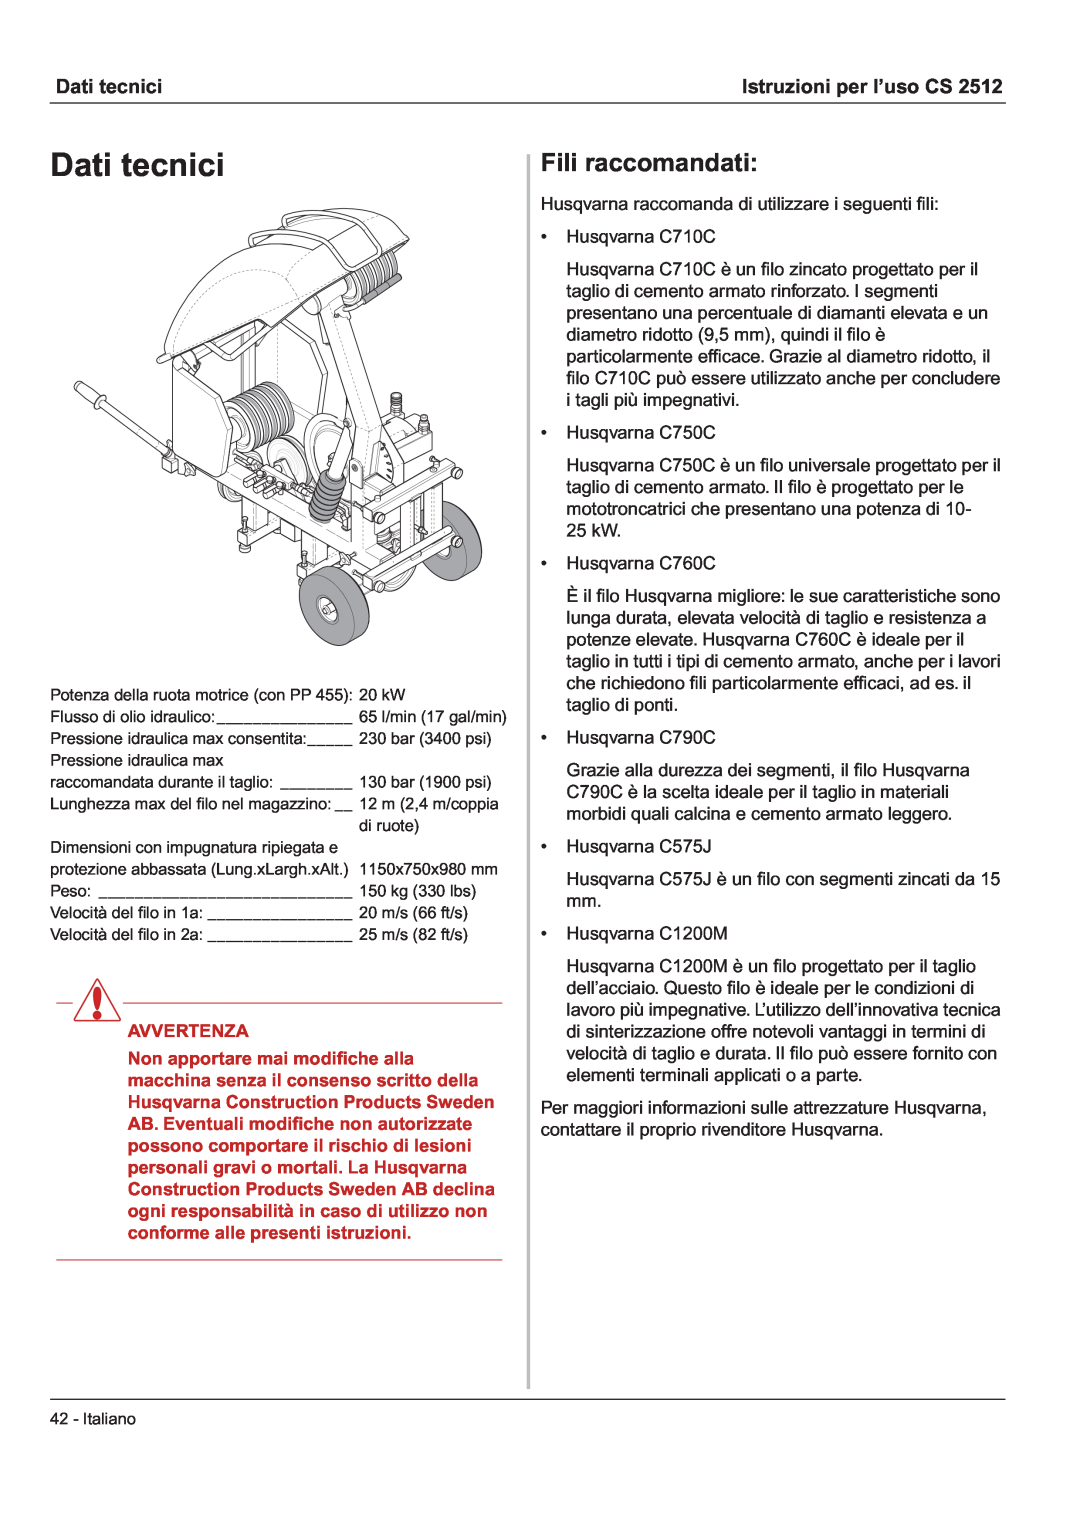 Husqvarna CS 2512 manual Dati tecnici, Fili raccomandati, Istruzioni per l’uso CS, Avvertenza 